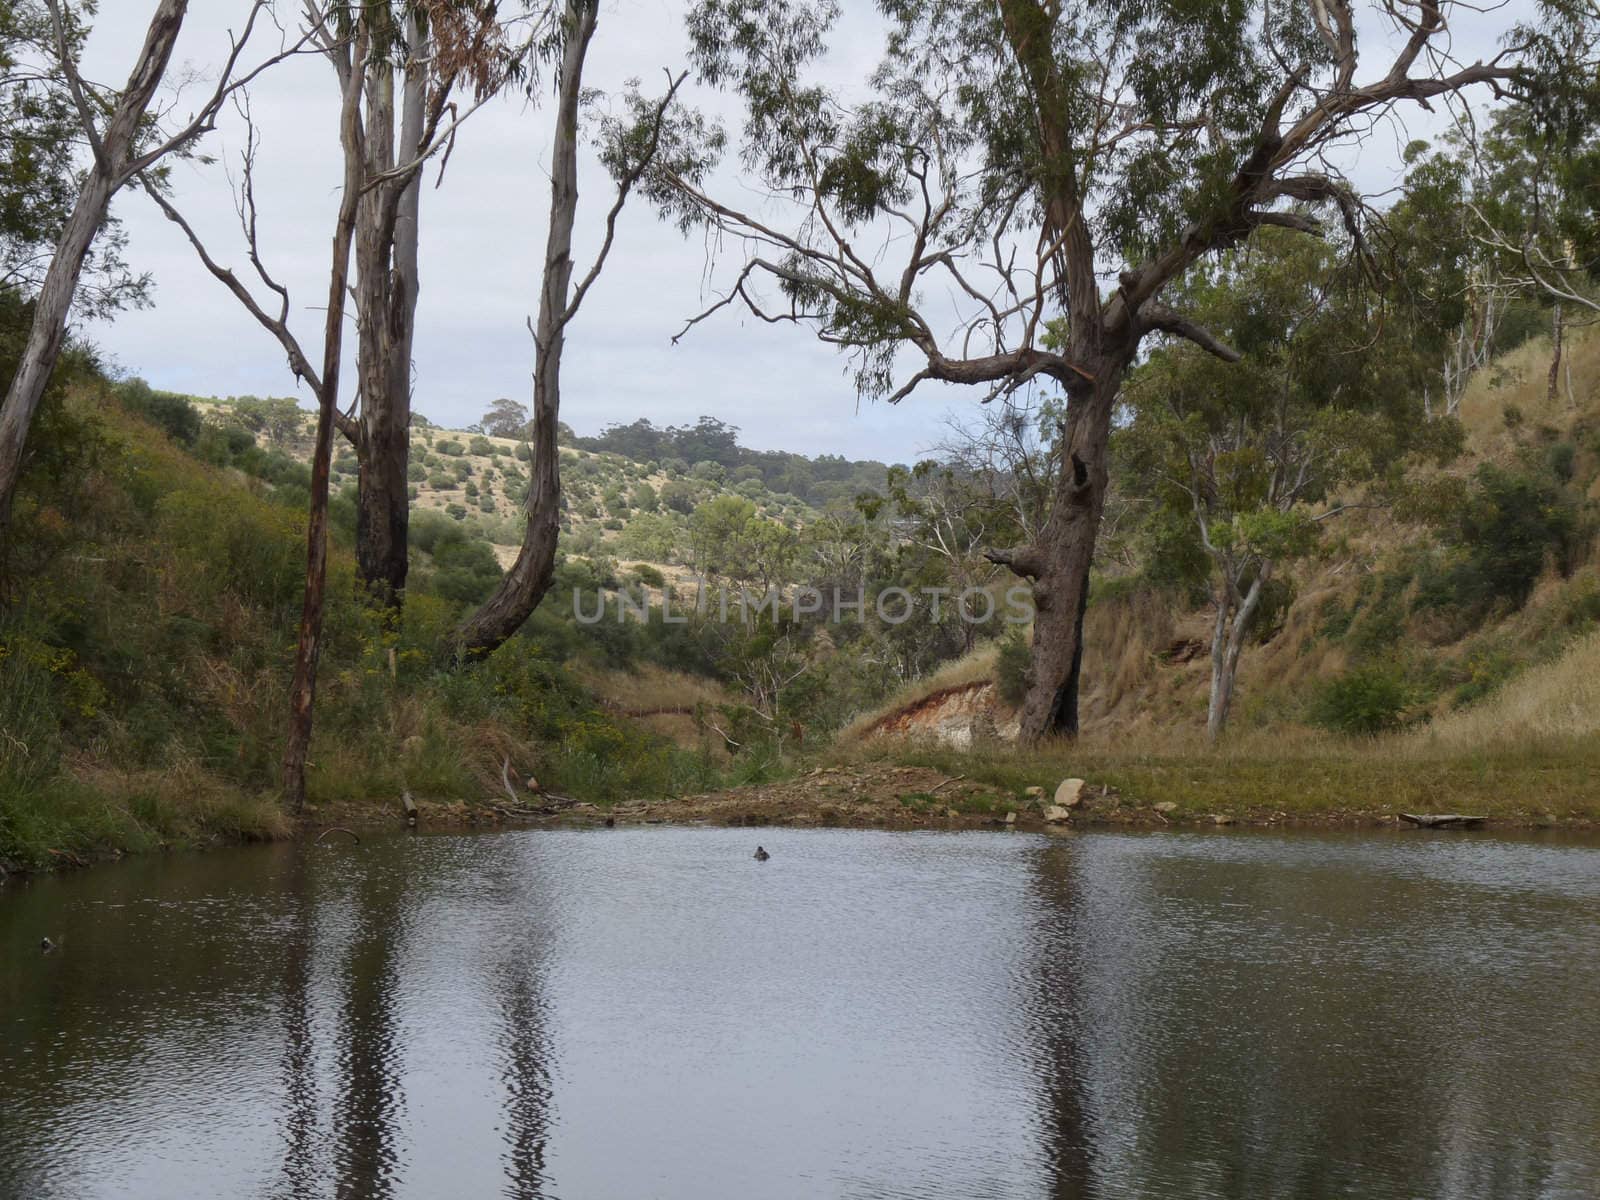 A billabong containing water during Australian summer